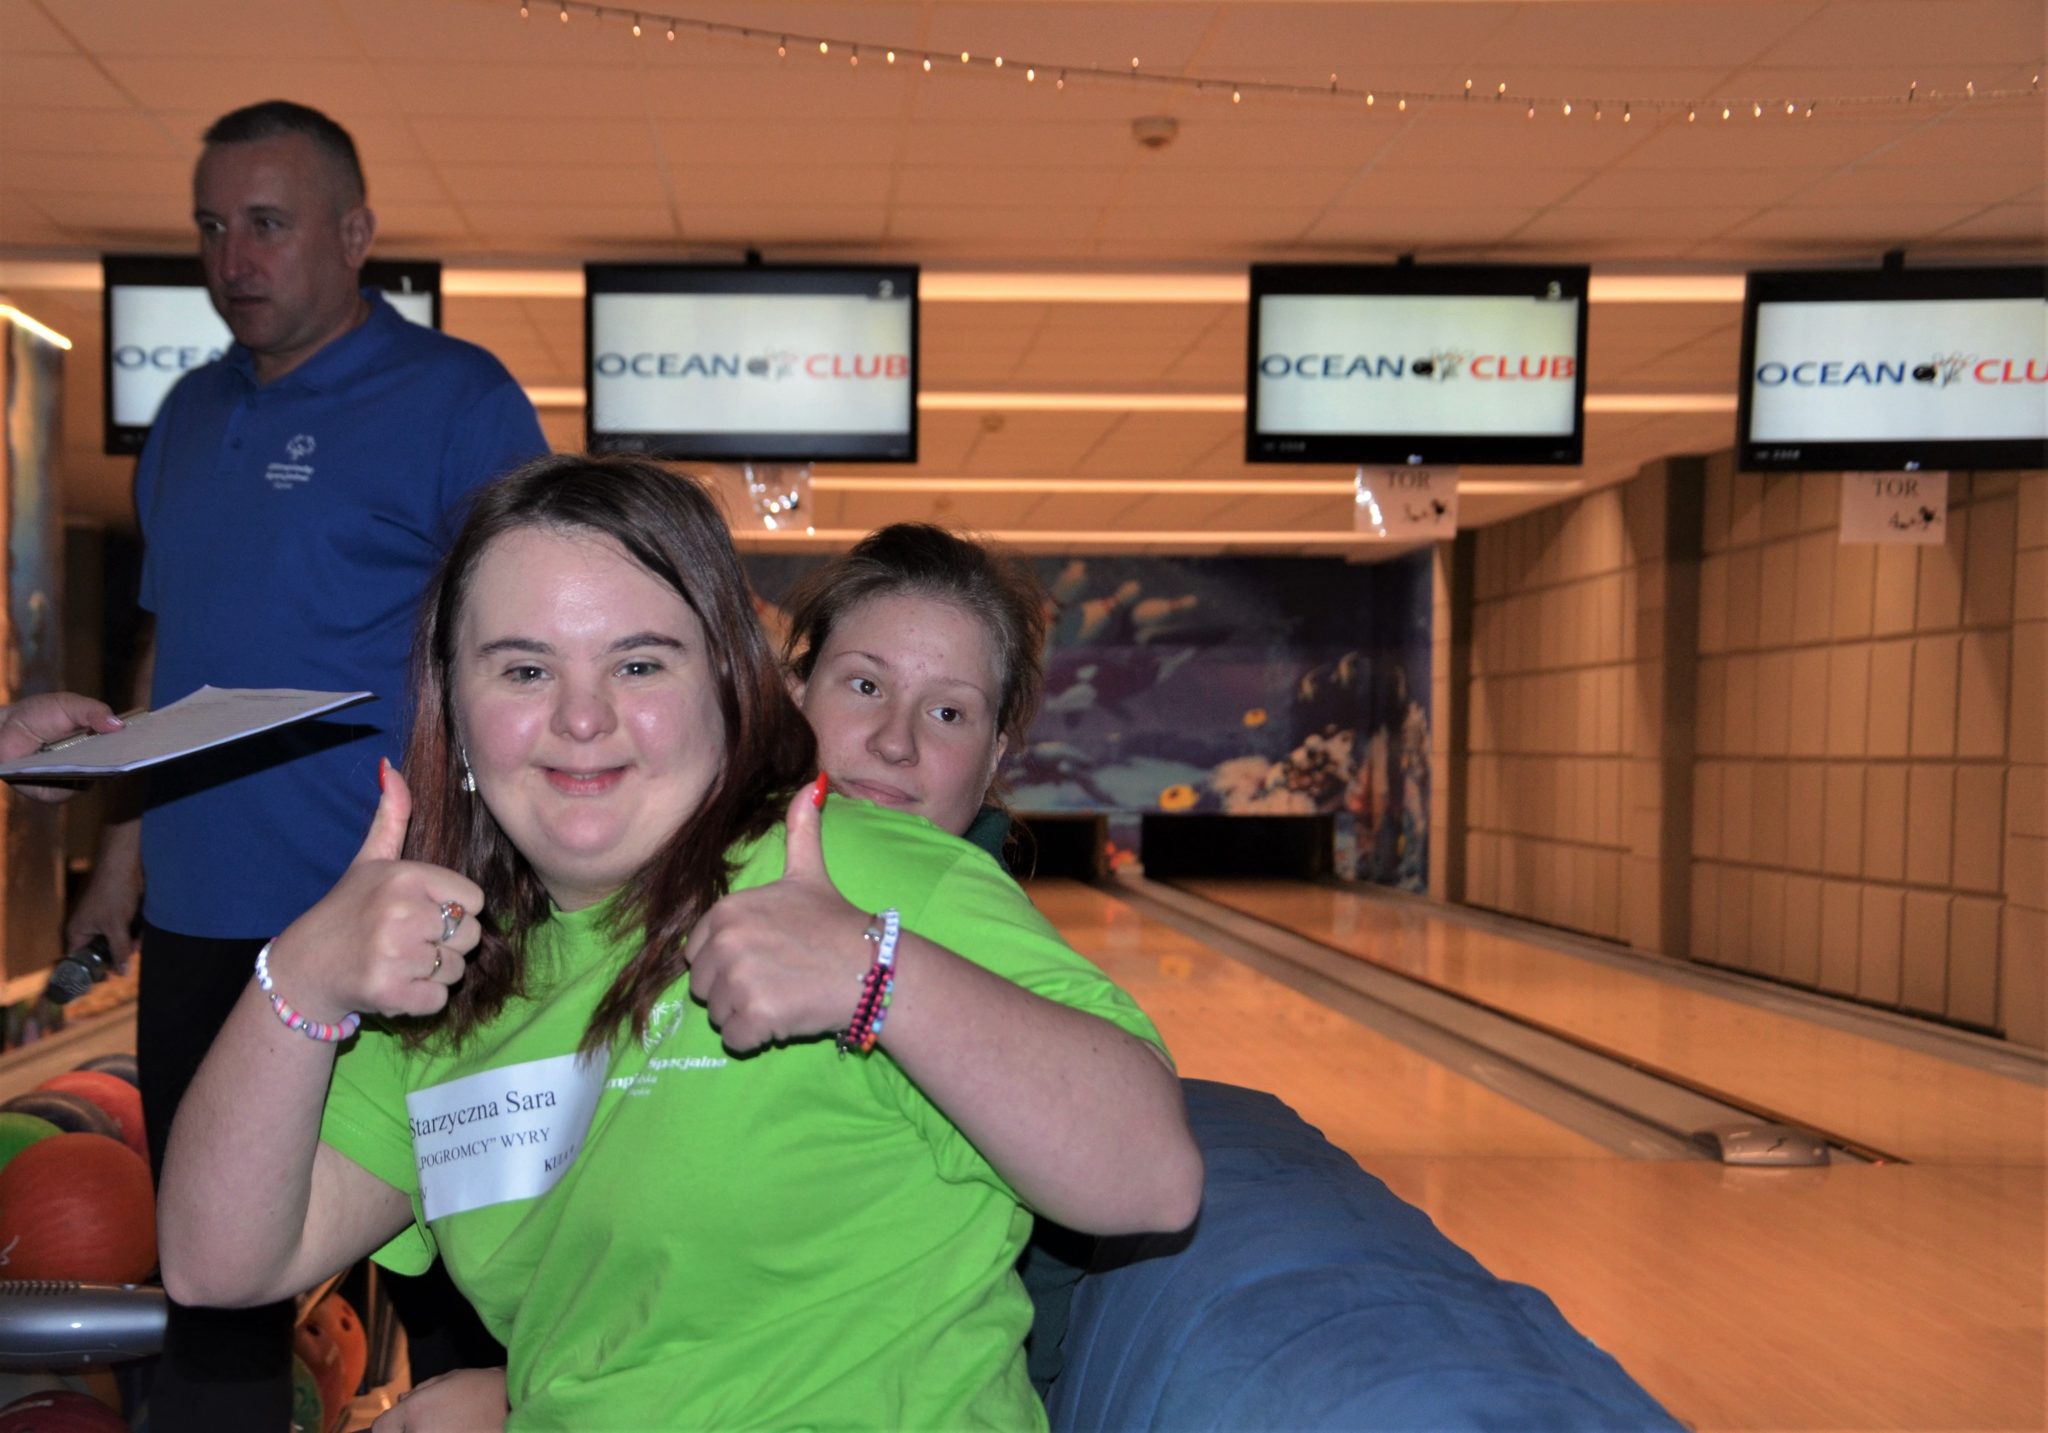 Dziewczyna w zielonej koszulce na pierwszym planie, za nią tor bowlingowy.